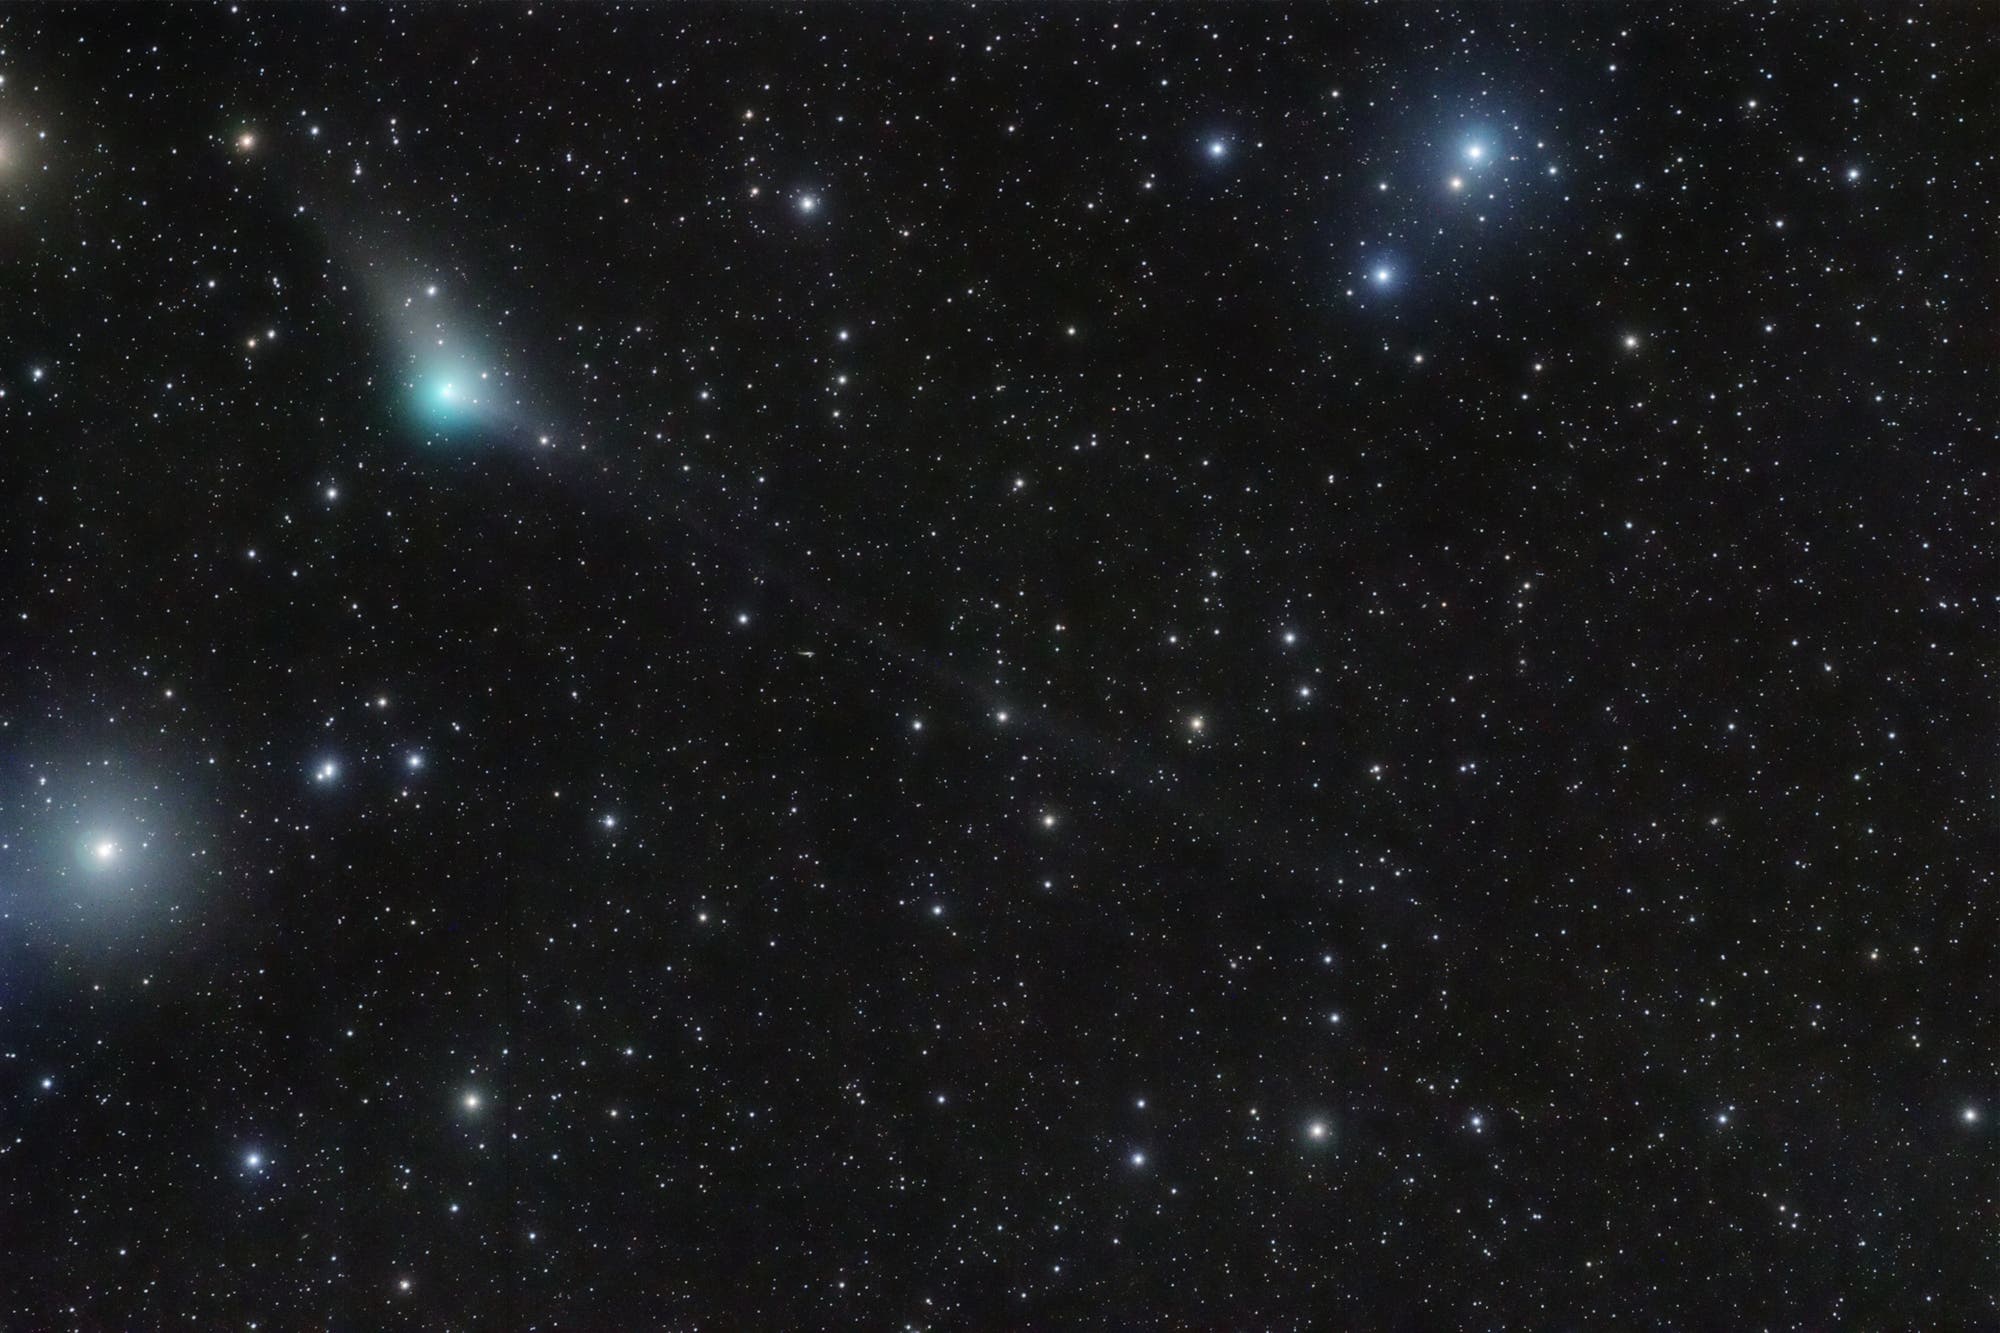 Comet C/2013 X1 PANSTARRS